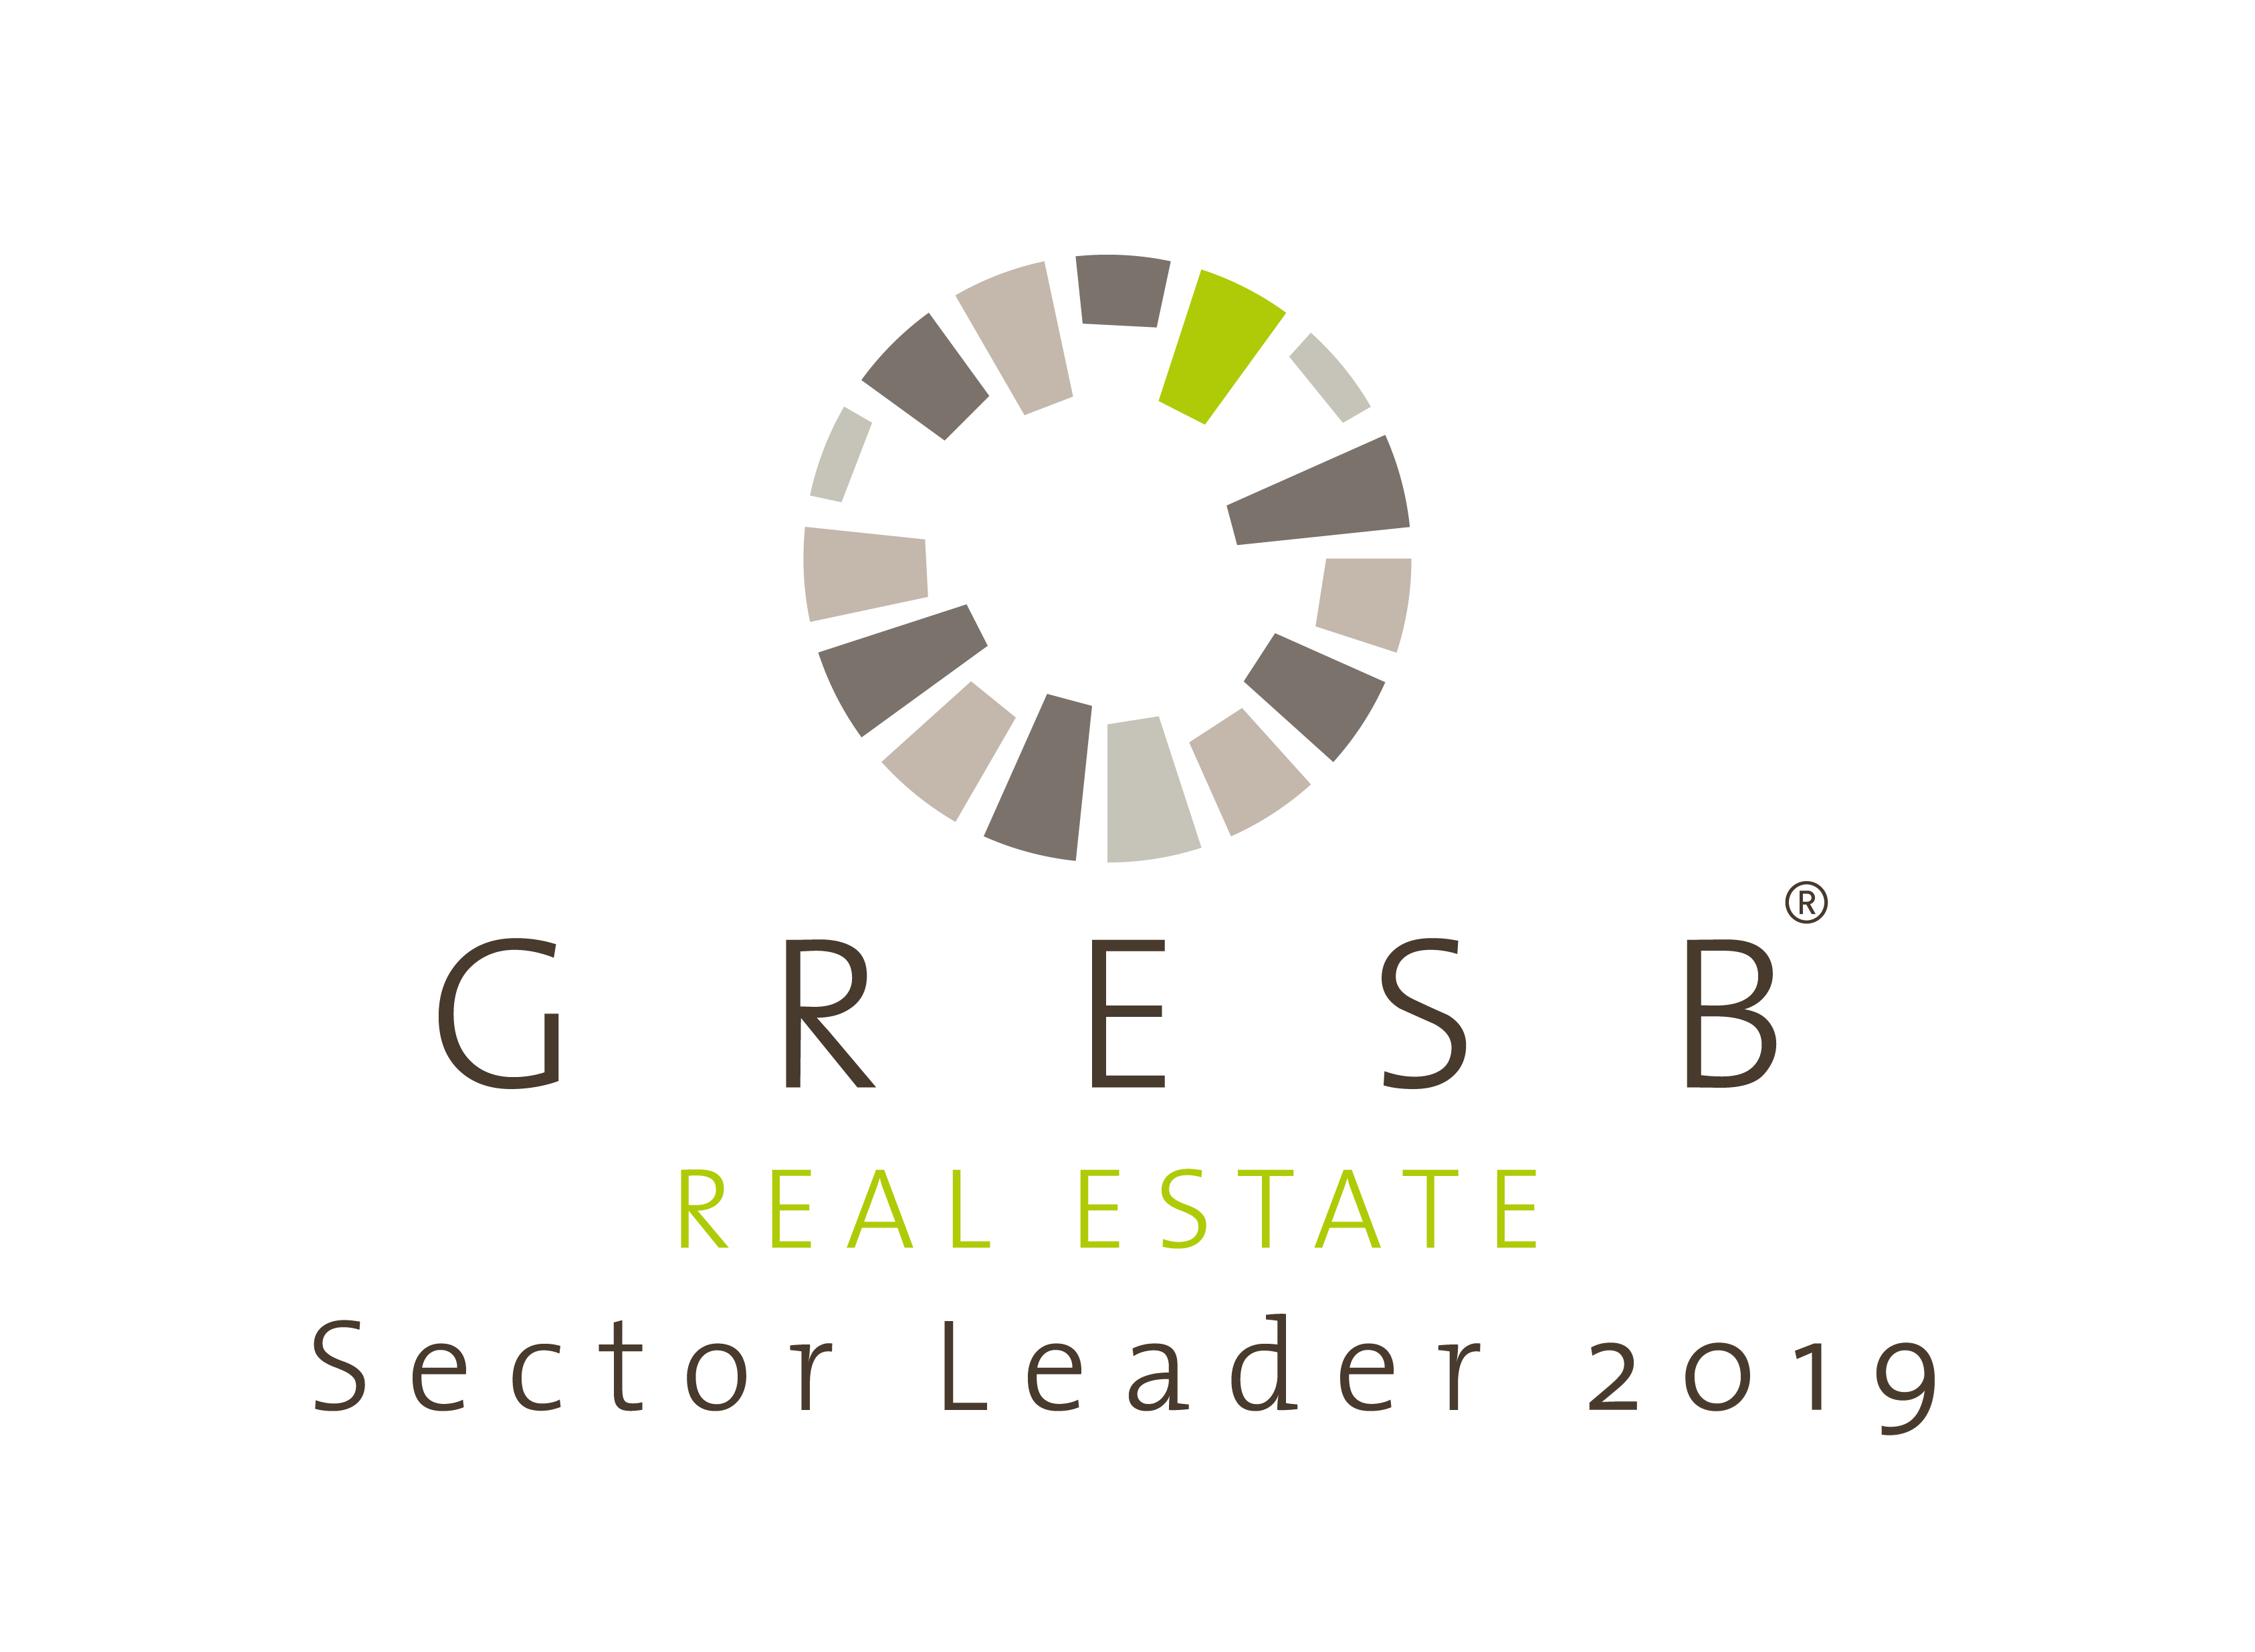 GRESB_RE_Sector_Leader_2019